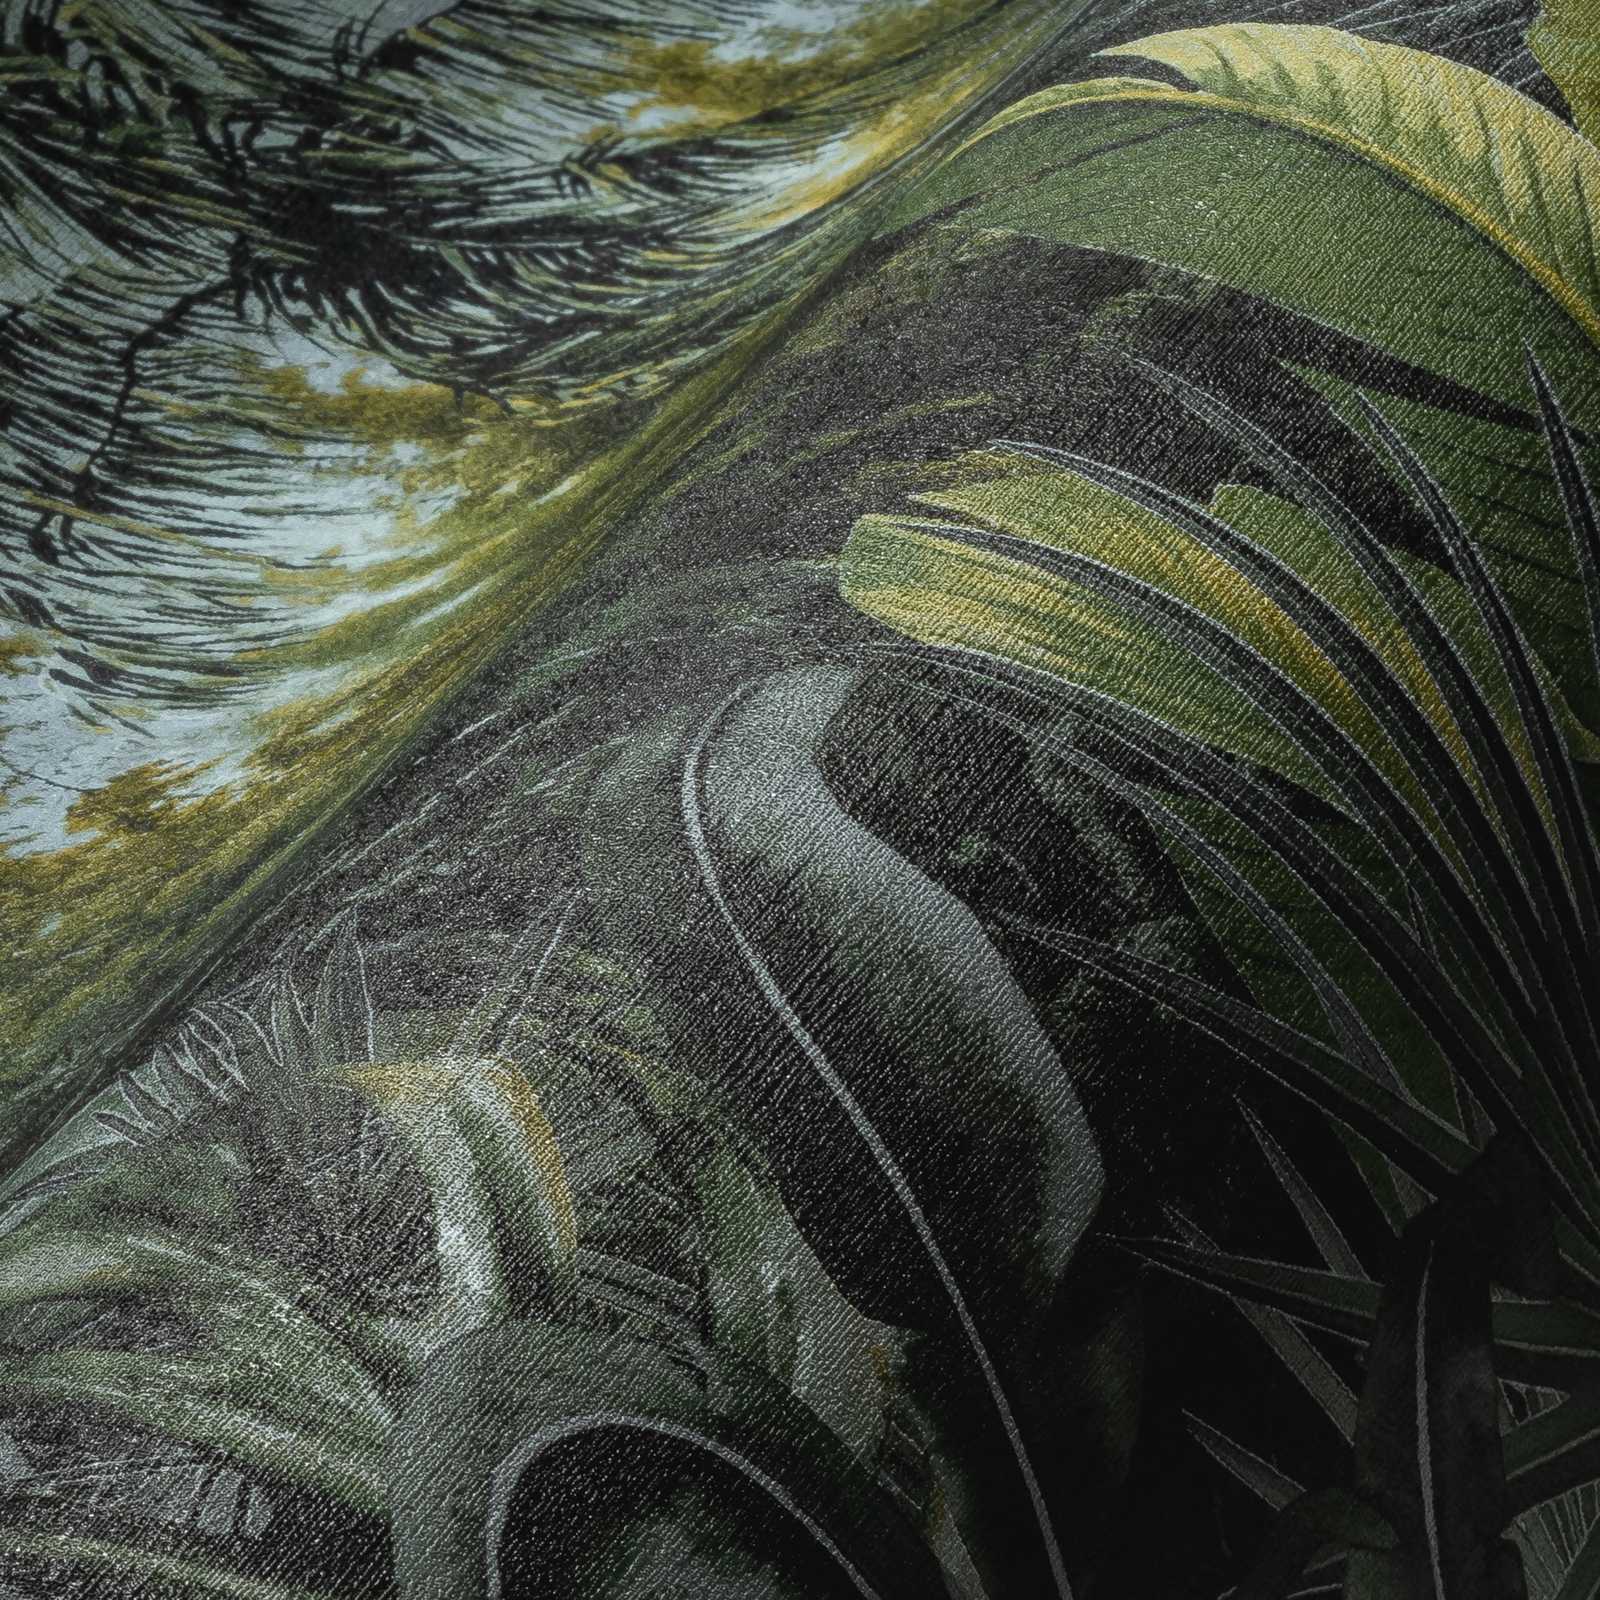             Papel pintado no tejido con diseño de palmeras y hojas - verde
        